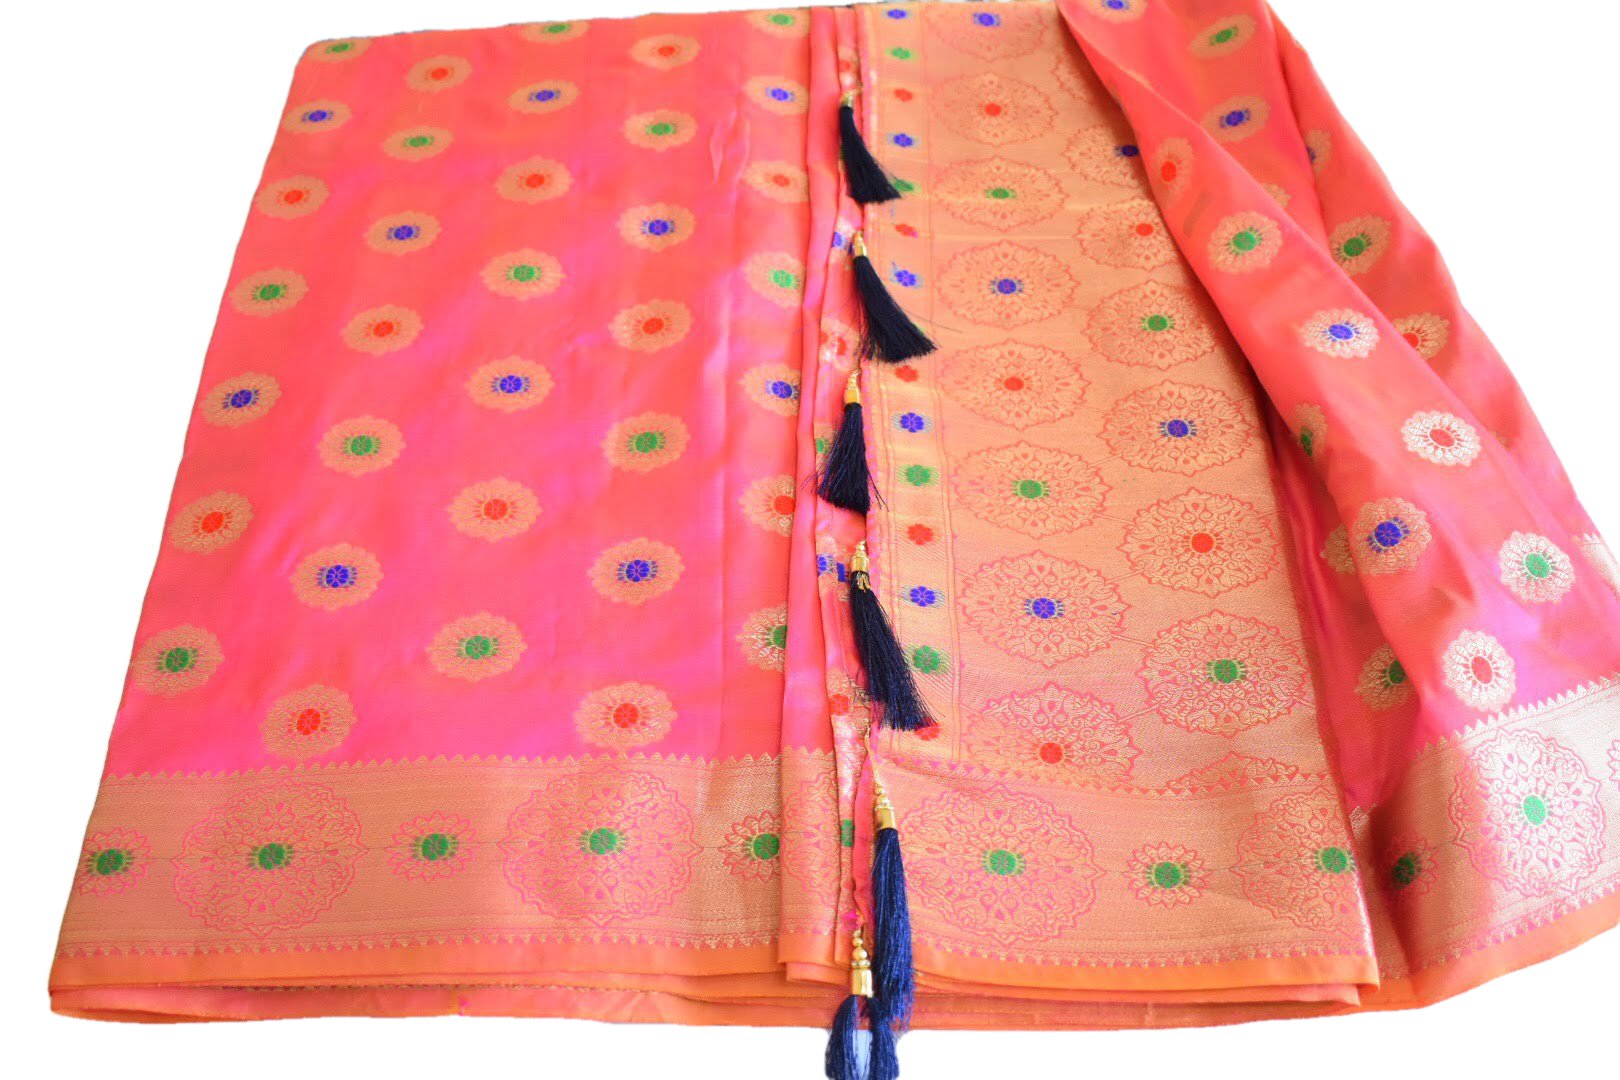 Pink III Color - Silk Banaras Saree - Satin Weave - Gold Zari Floral Design